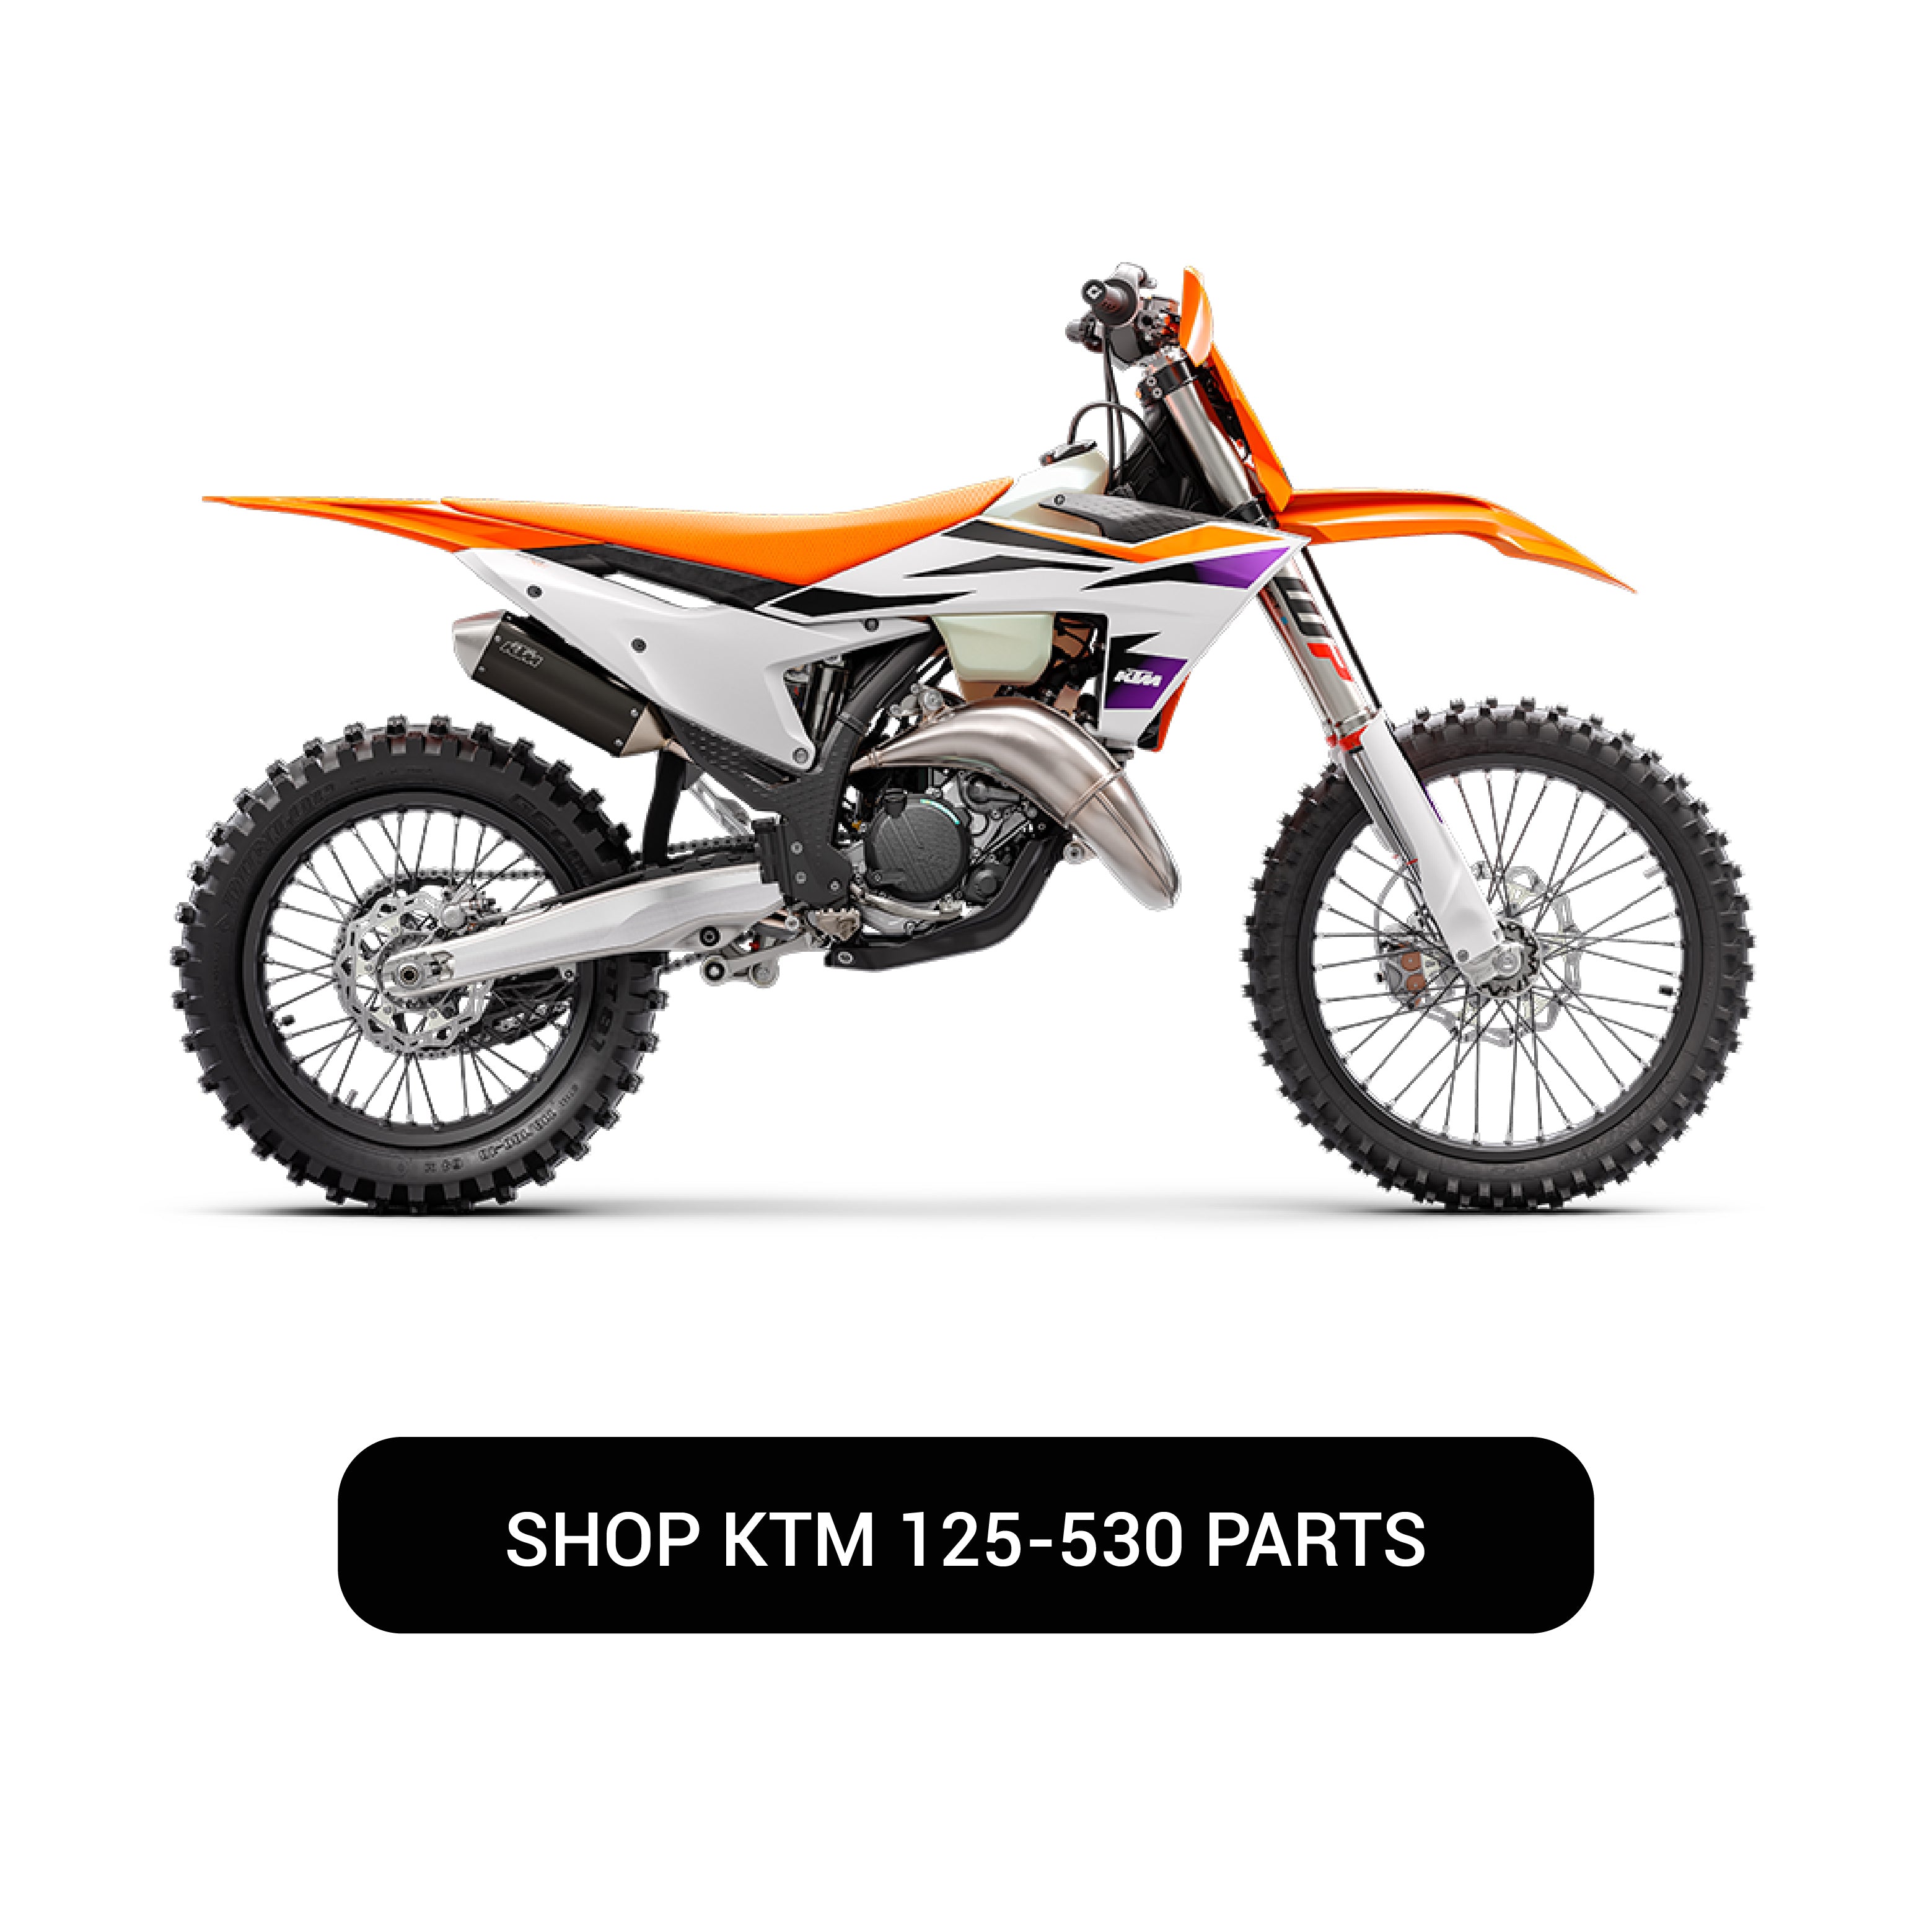 KTM OEM Parts | Nicecnc Motorcycle Accessories Online